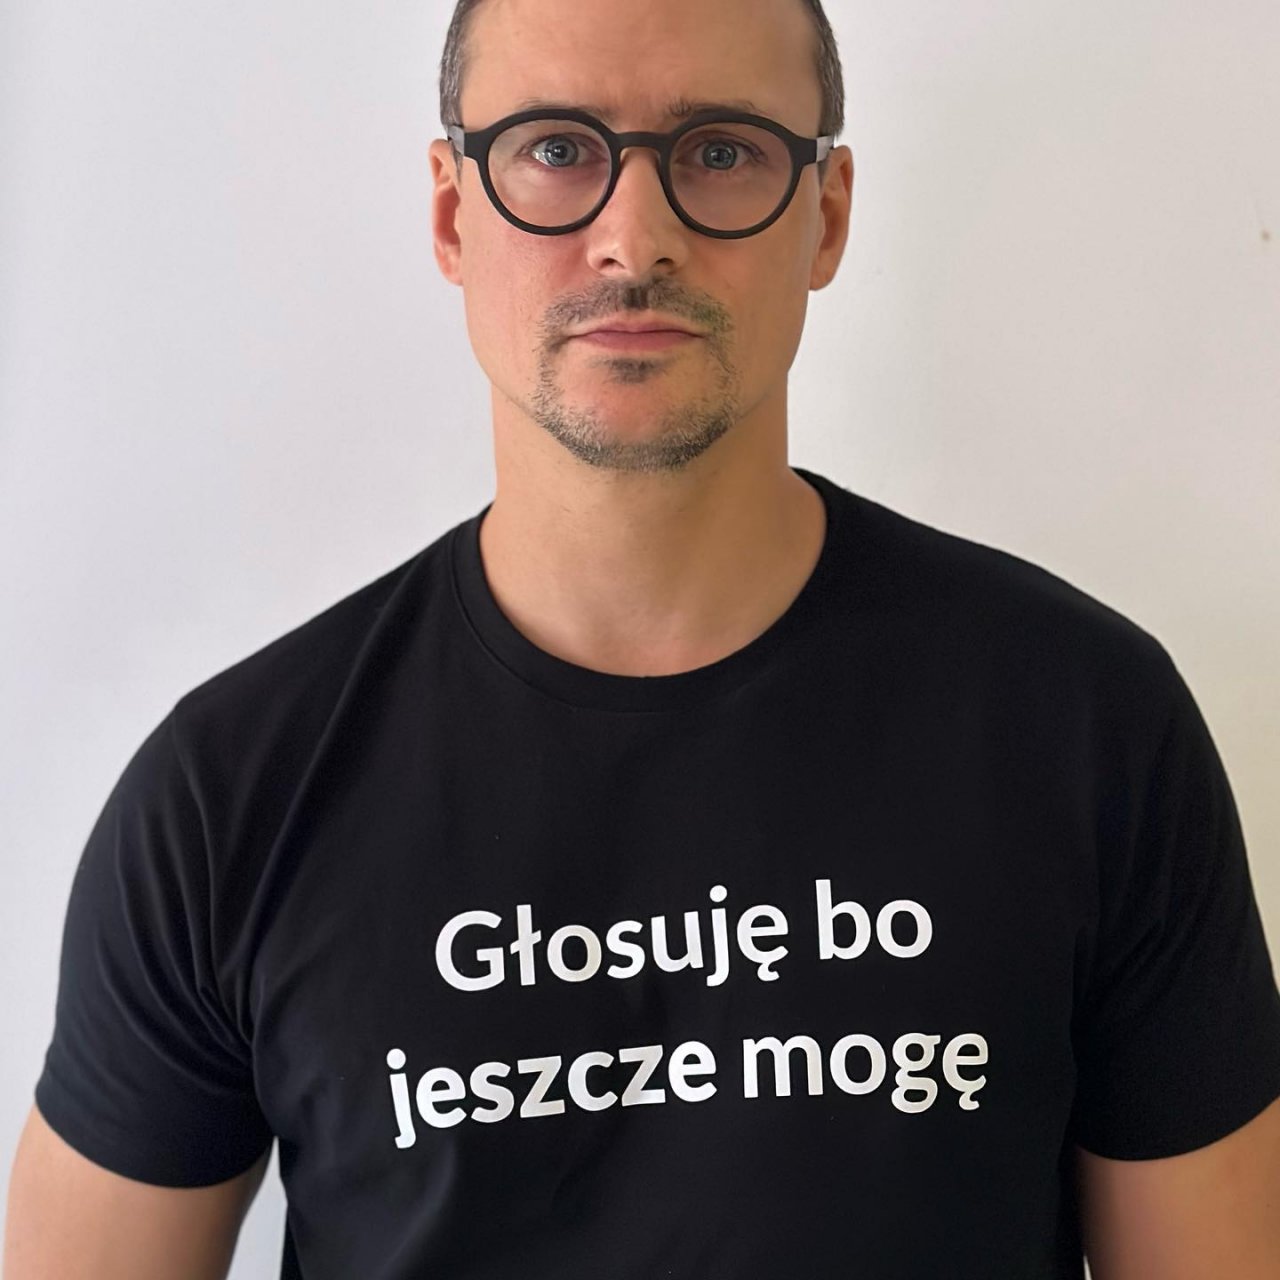 Mateusz Damięcki w koszulce z napisem "Głosuję bo jeszcze mogę"